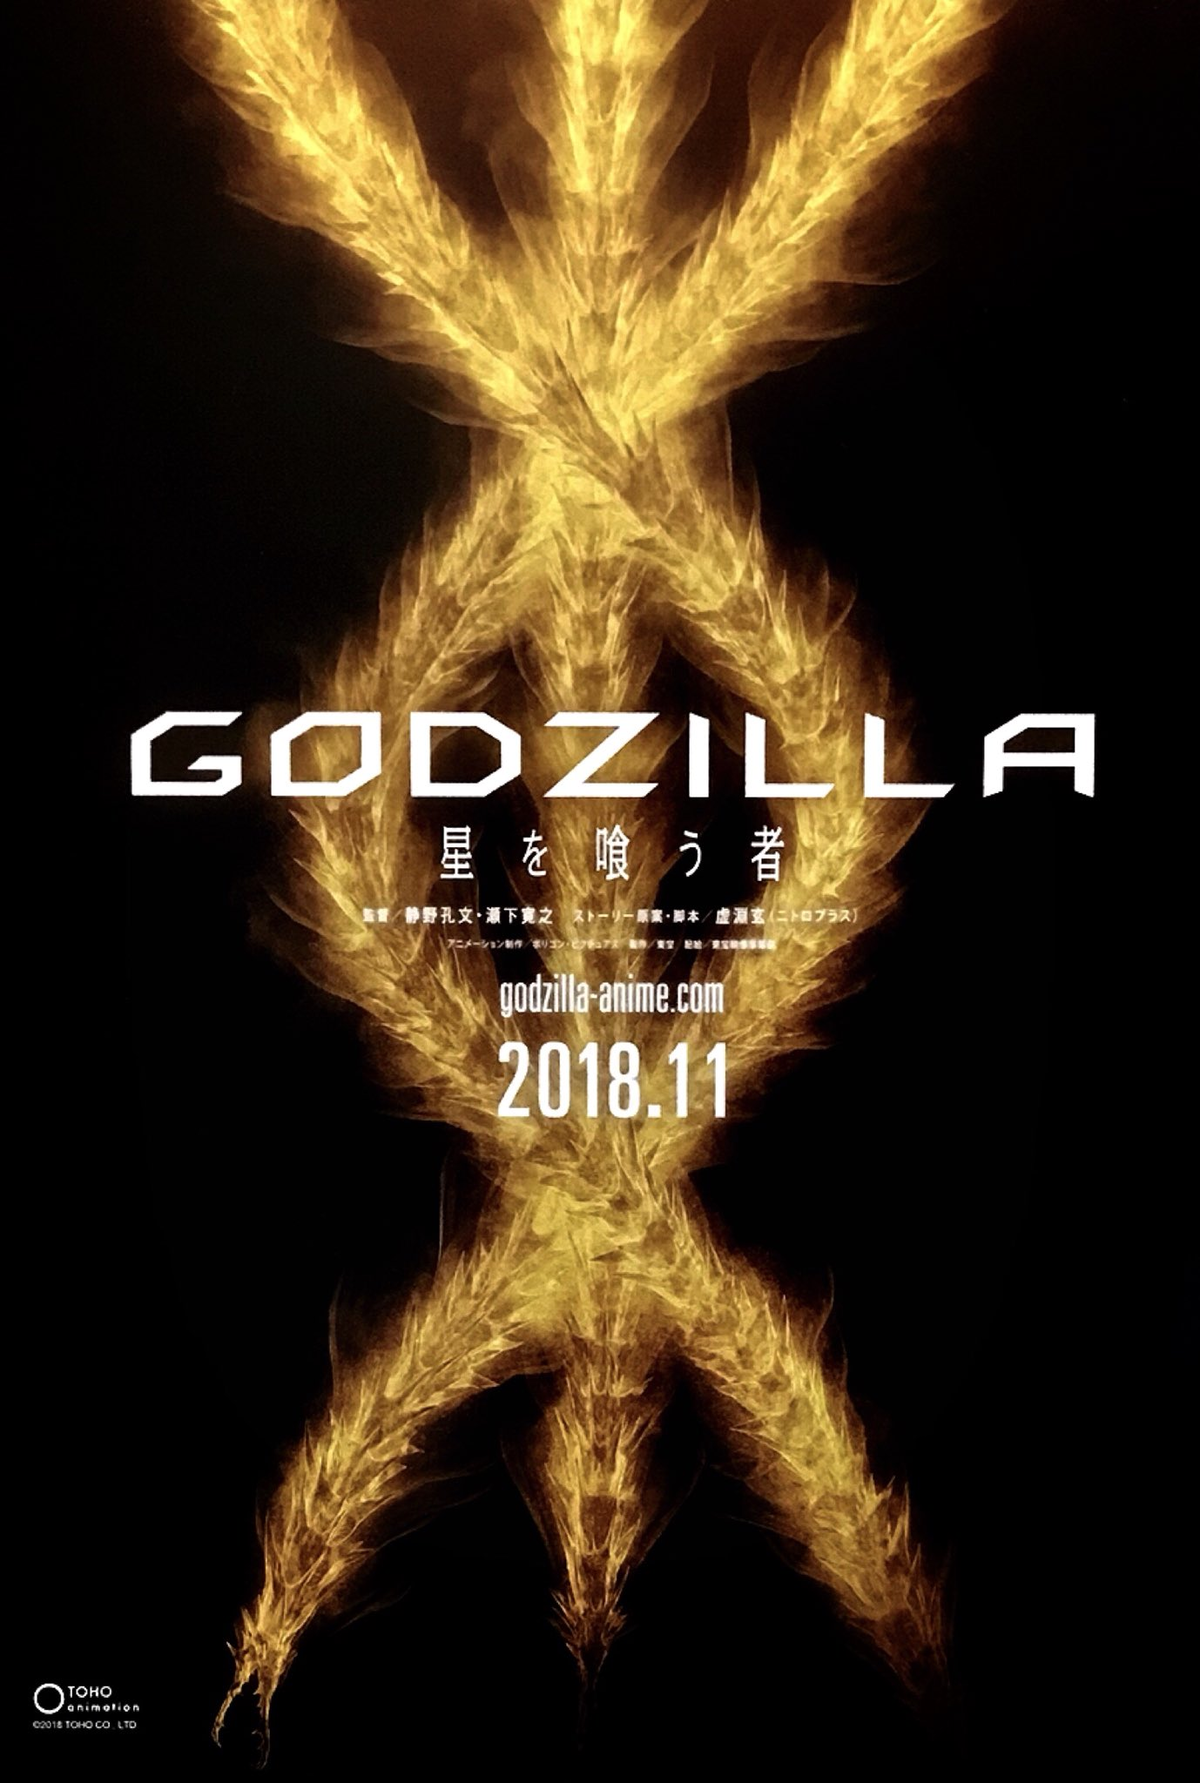 دانلود انیمیشن Godzilla: The Planet Eater 2018 با دوبله فارسی